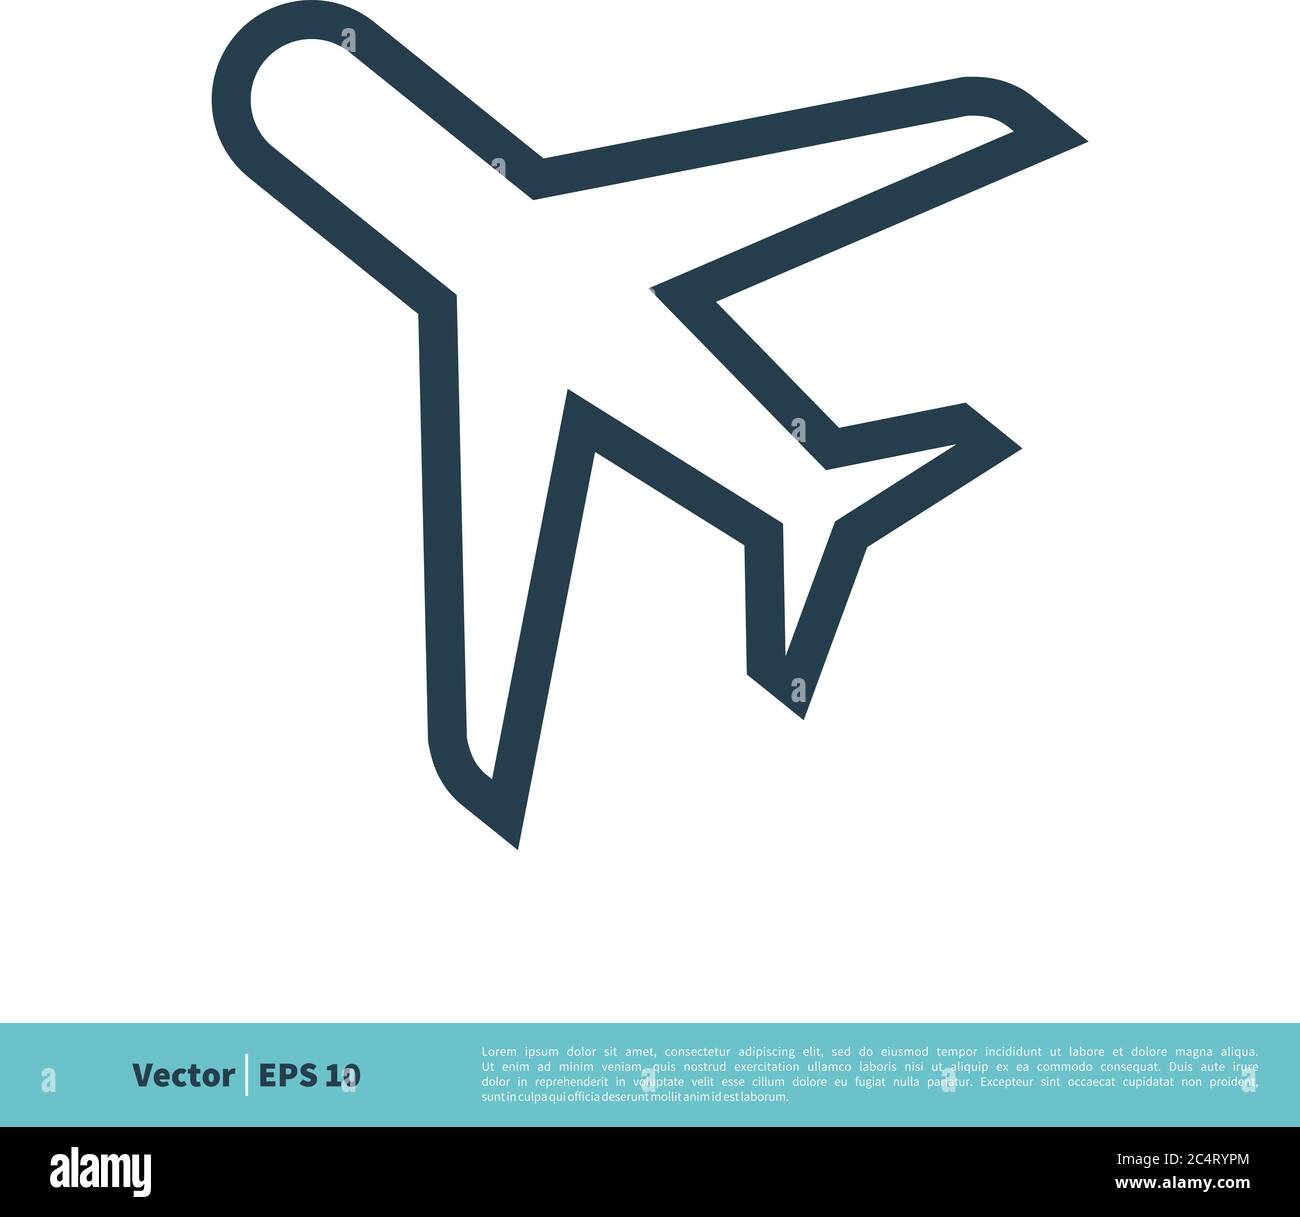 Modèle d'illustration pour logo vectoriel d'icône de plan de jet. Vecteur EPS 10. Illustration de Vecteur